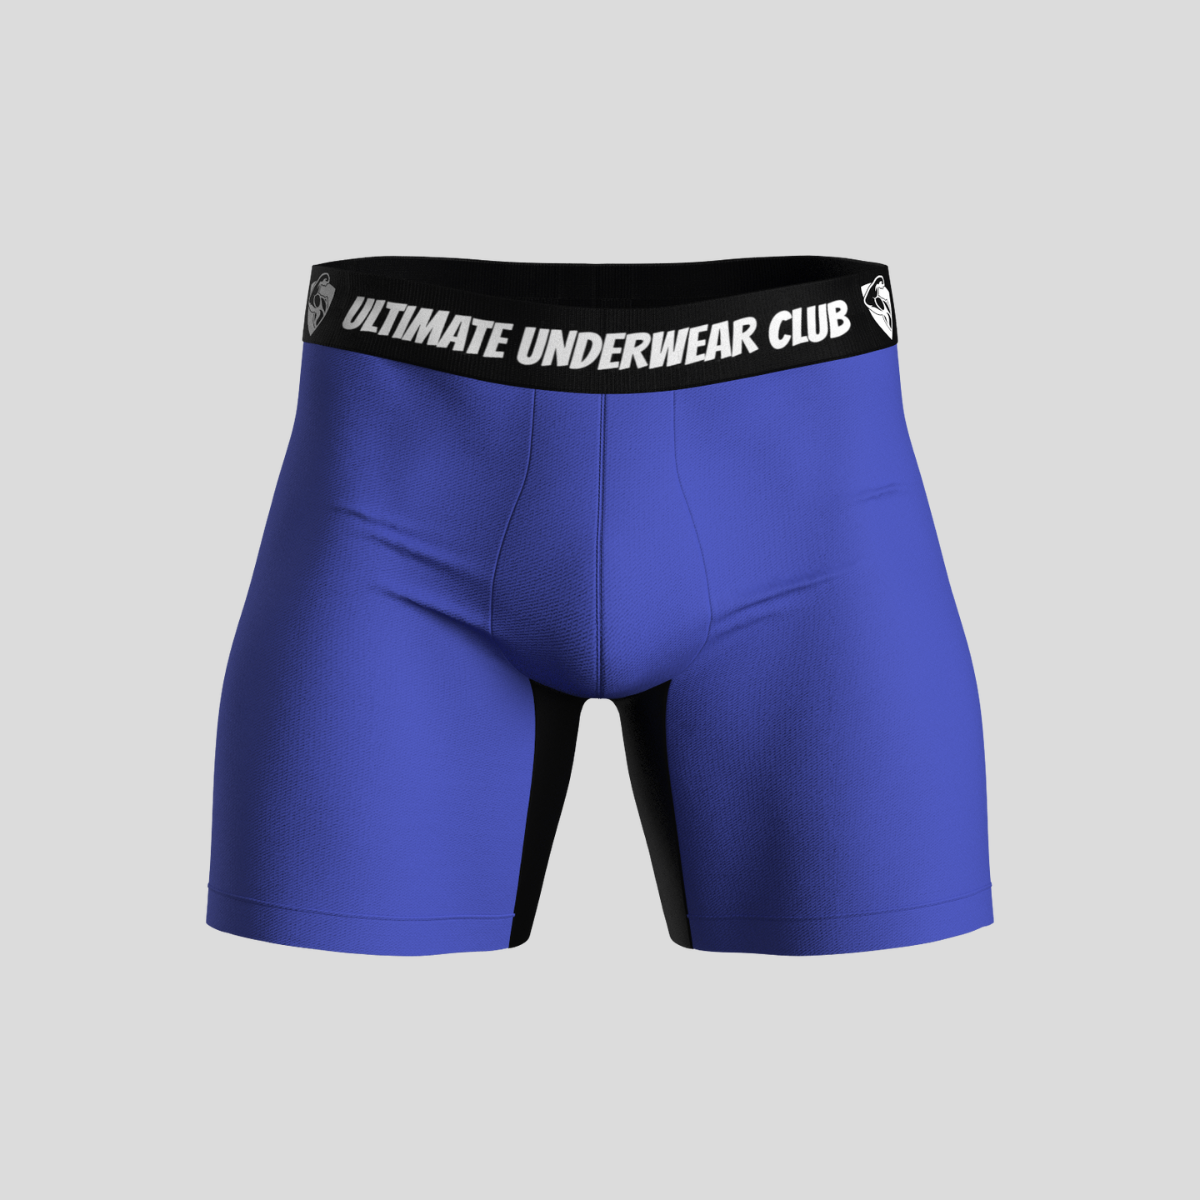 Size 5X Men's Underwear - Kmart